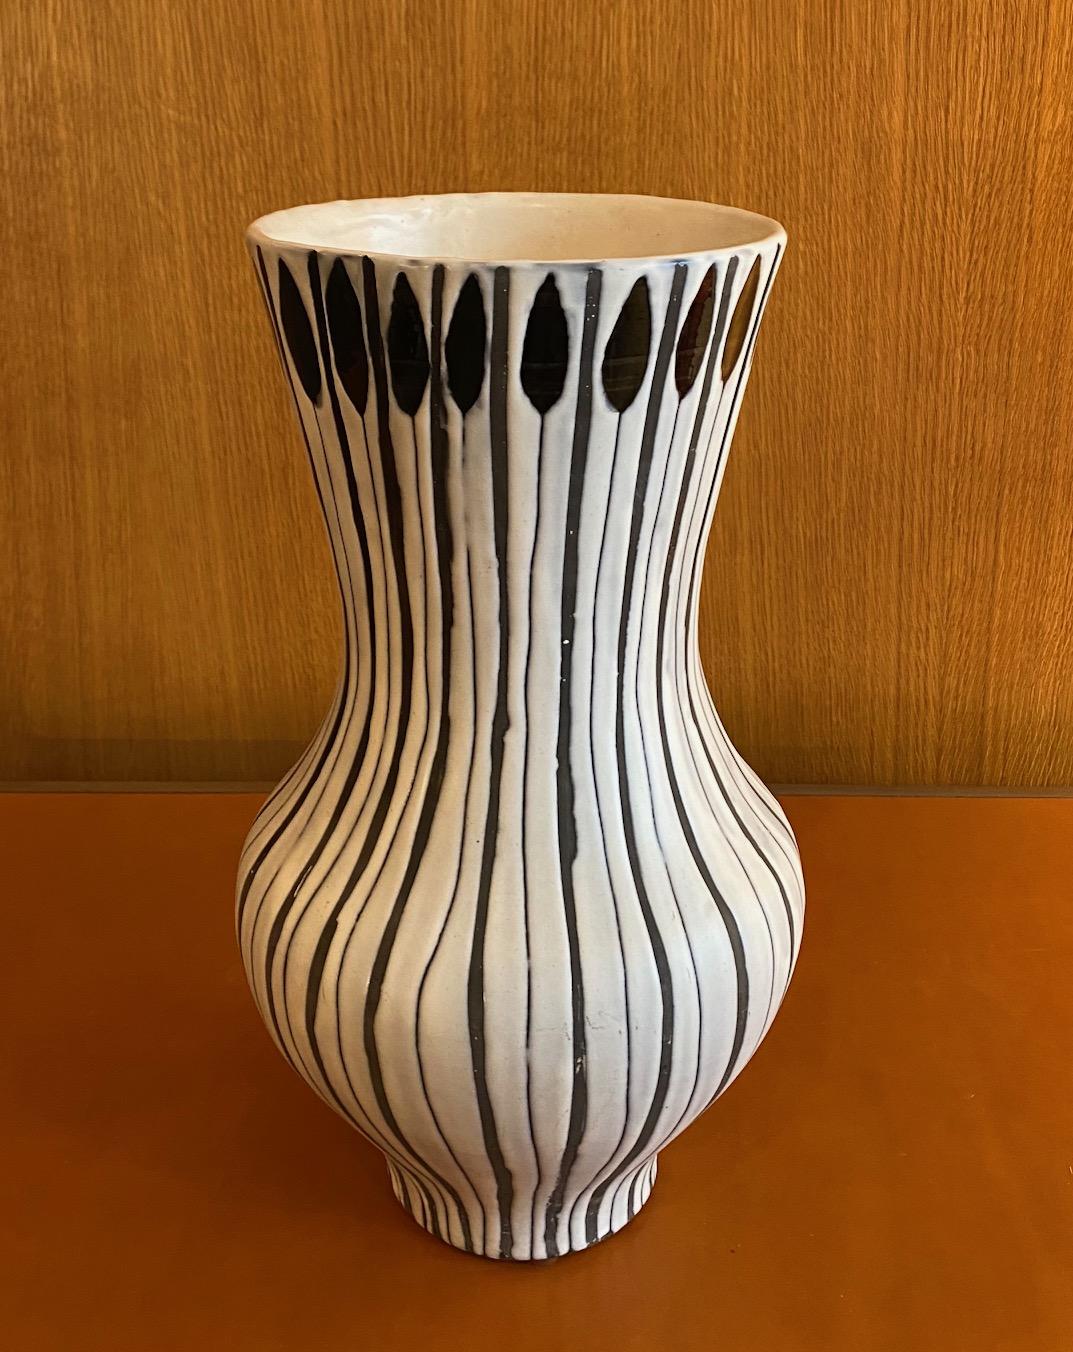 Vase en céramique de Roger Capron, France, années 1960
Signé 